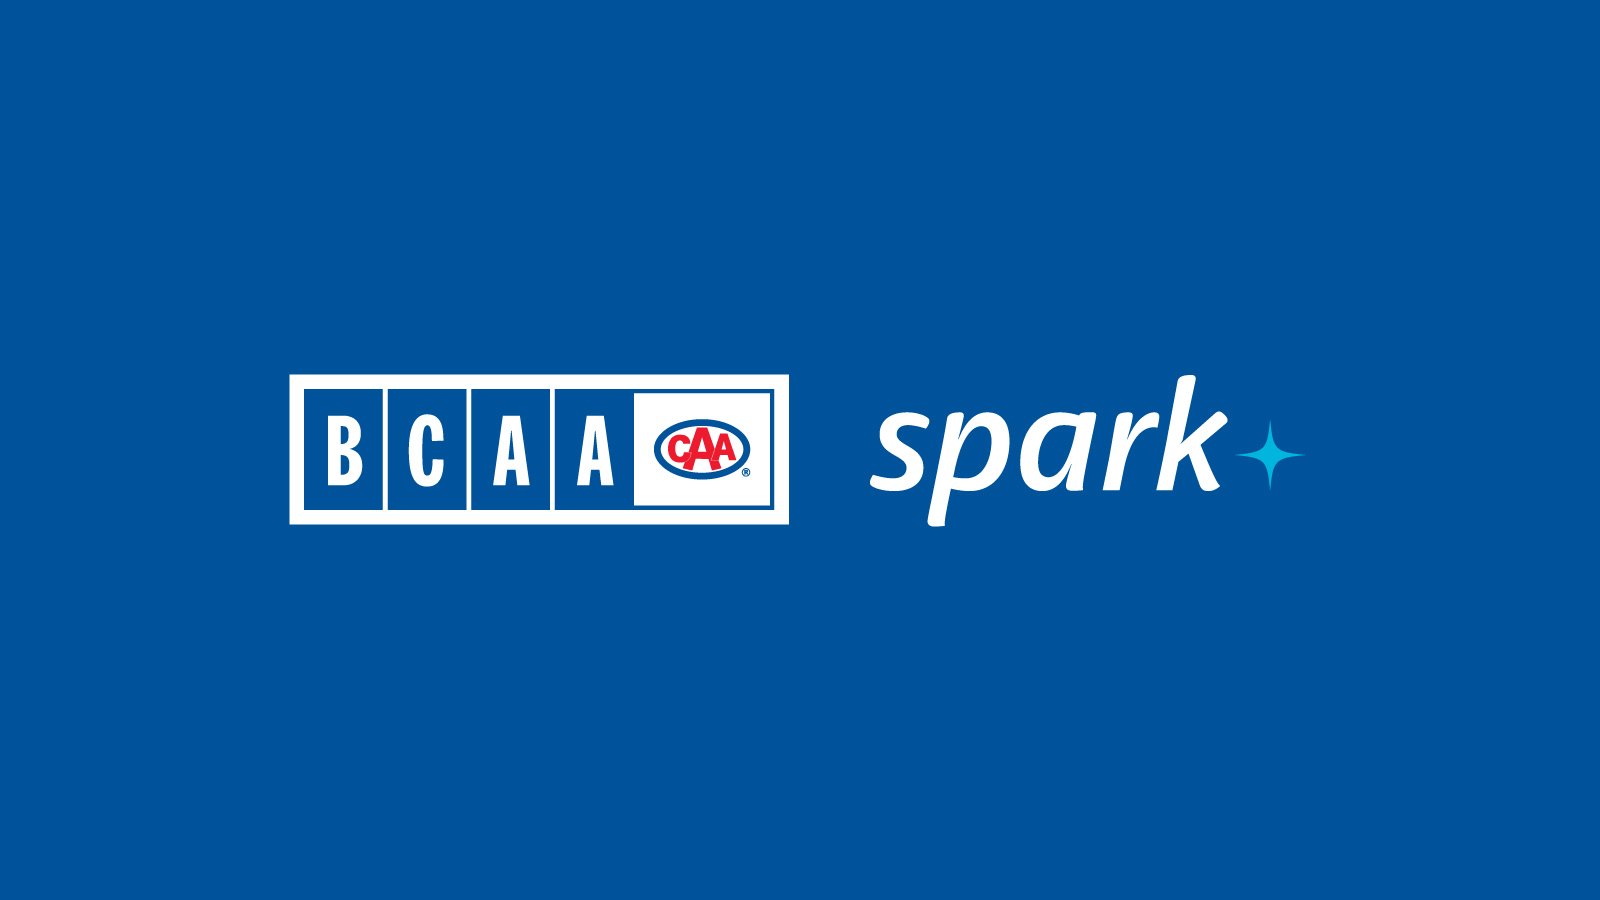 spark logo + BCAA logo